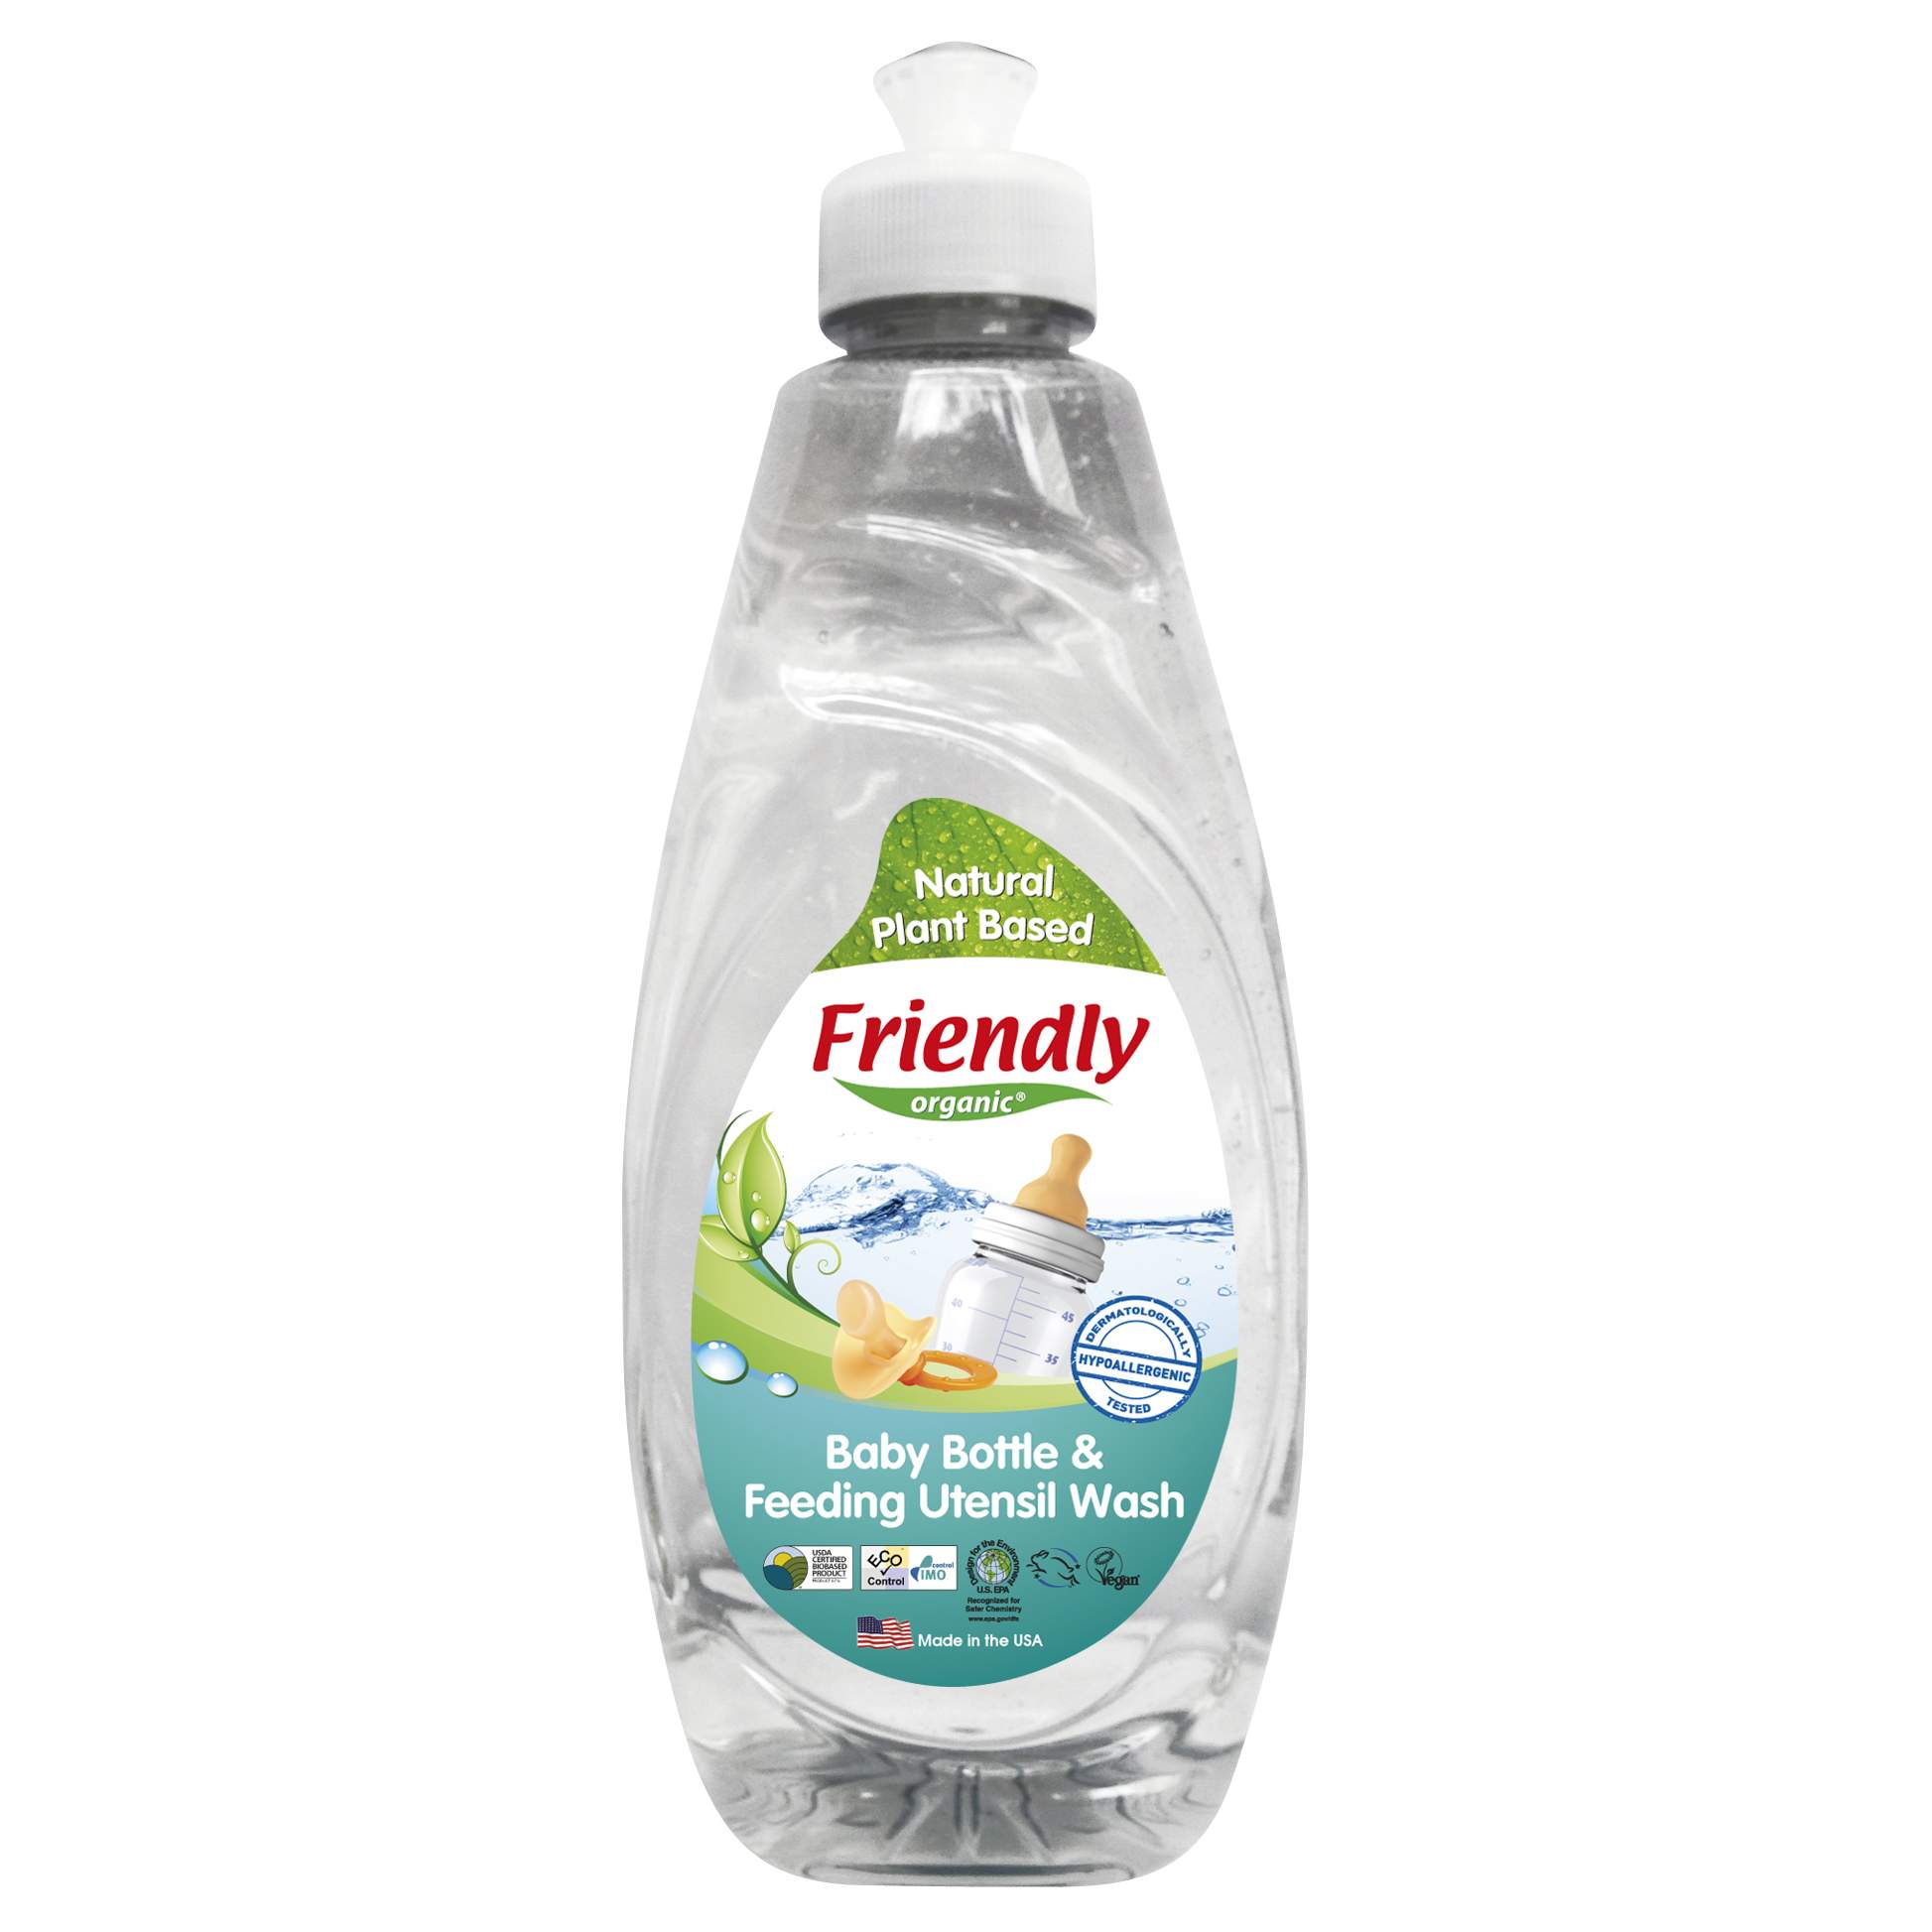 Detergent de vase si biberoane fara miros, 414 ml, Friendly Organic